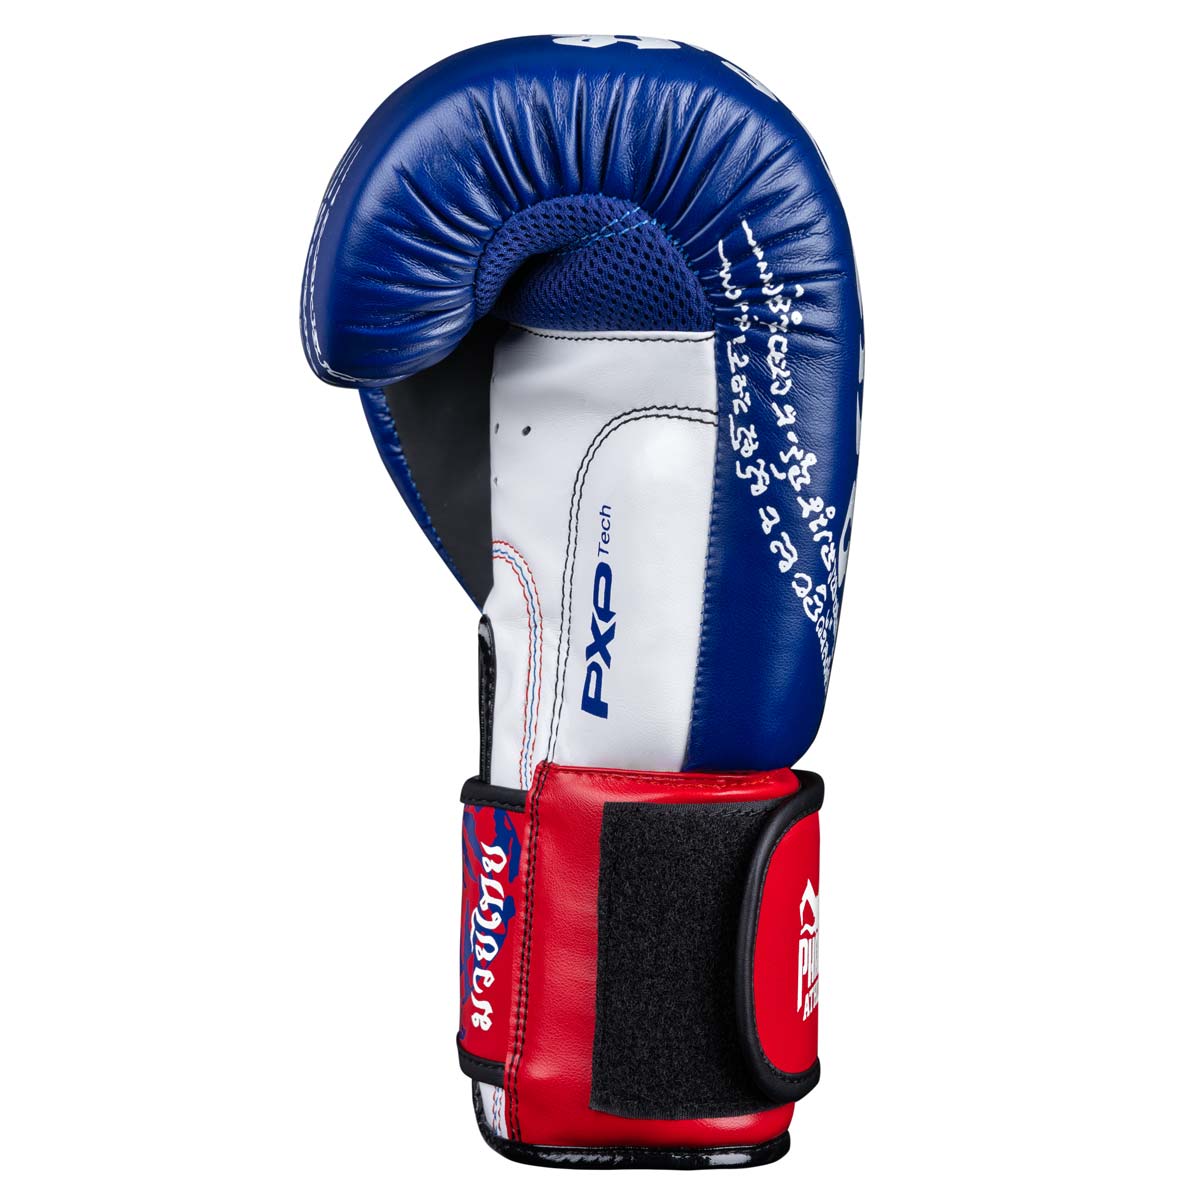 Die Phantom Muay Thai Boxhandschuhe verfügen über einen perfekten Schnitt und einen starken Klettverschluss für ultimativen Handgelenkssupport. 